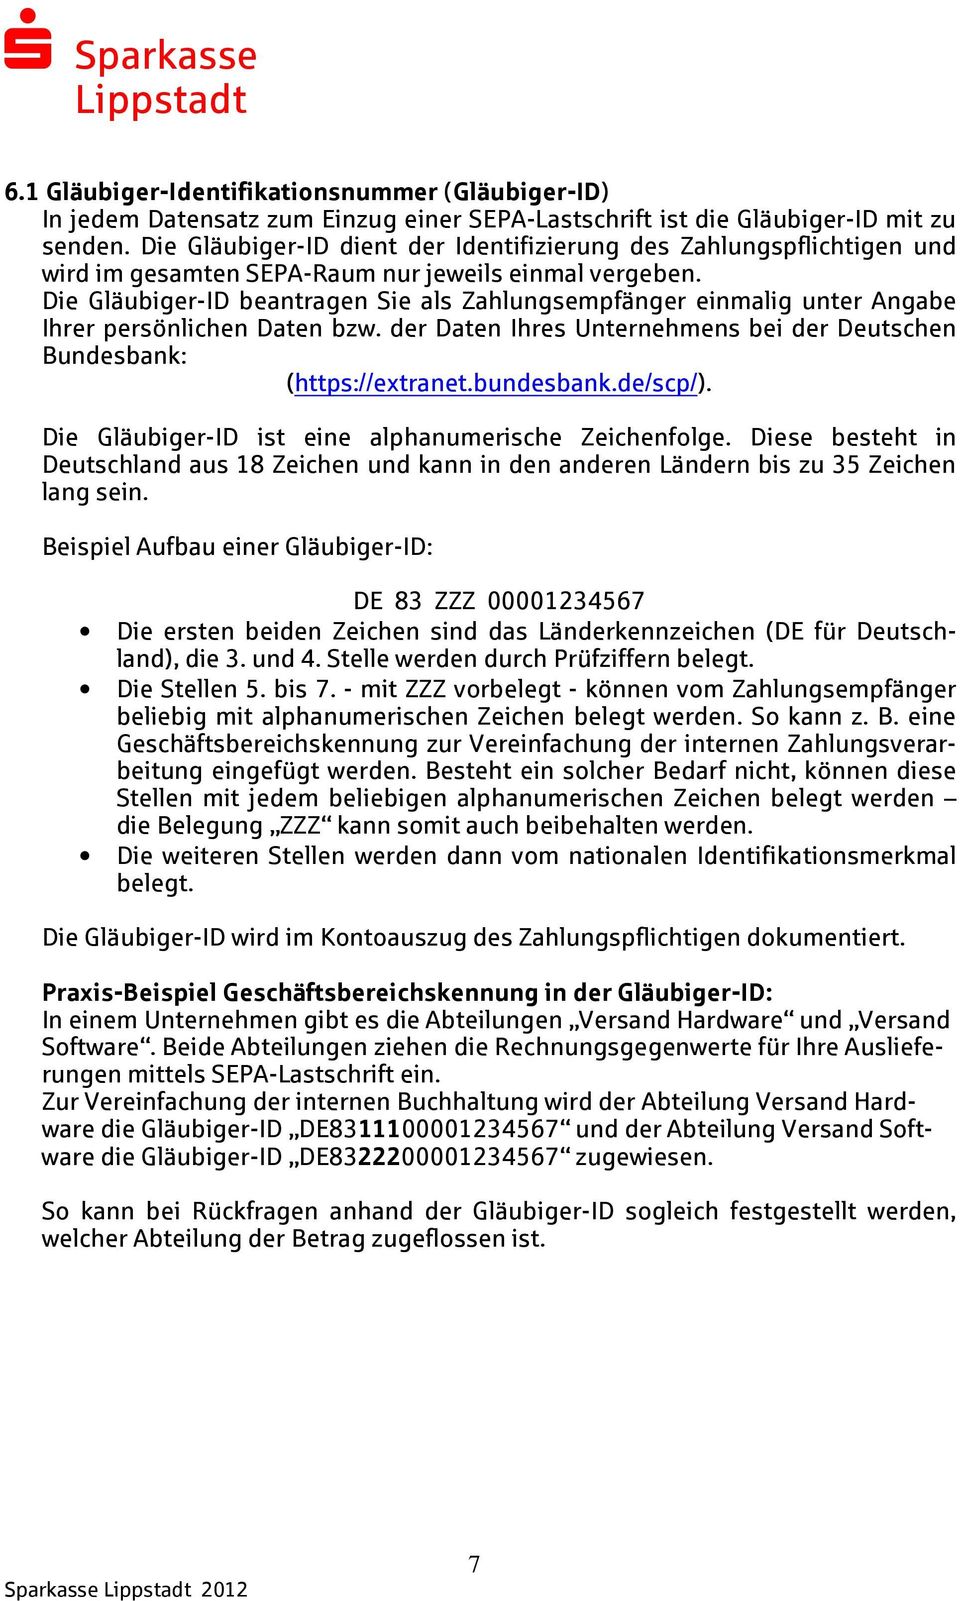 Die Gläubiger-ID beantragen Sie als Zahlungsempfänger einmalig unter Angabe Ihrer persönlichen Daten bzw. der Daten Ihres Unternehmens bei der Deutschen Bundesbank: (https://extranet.bundesbank.